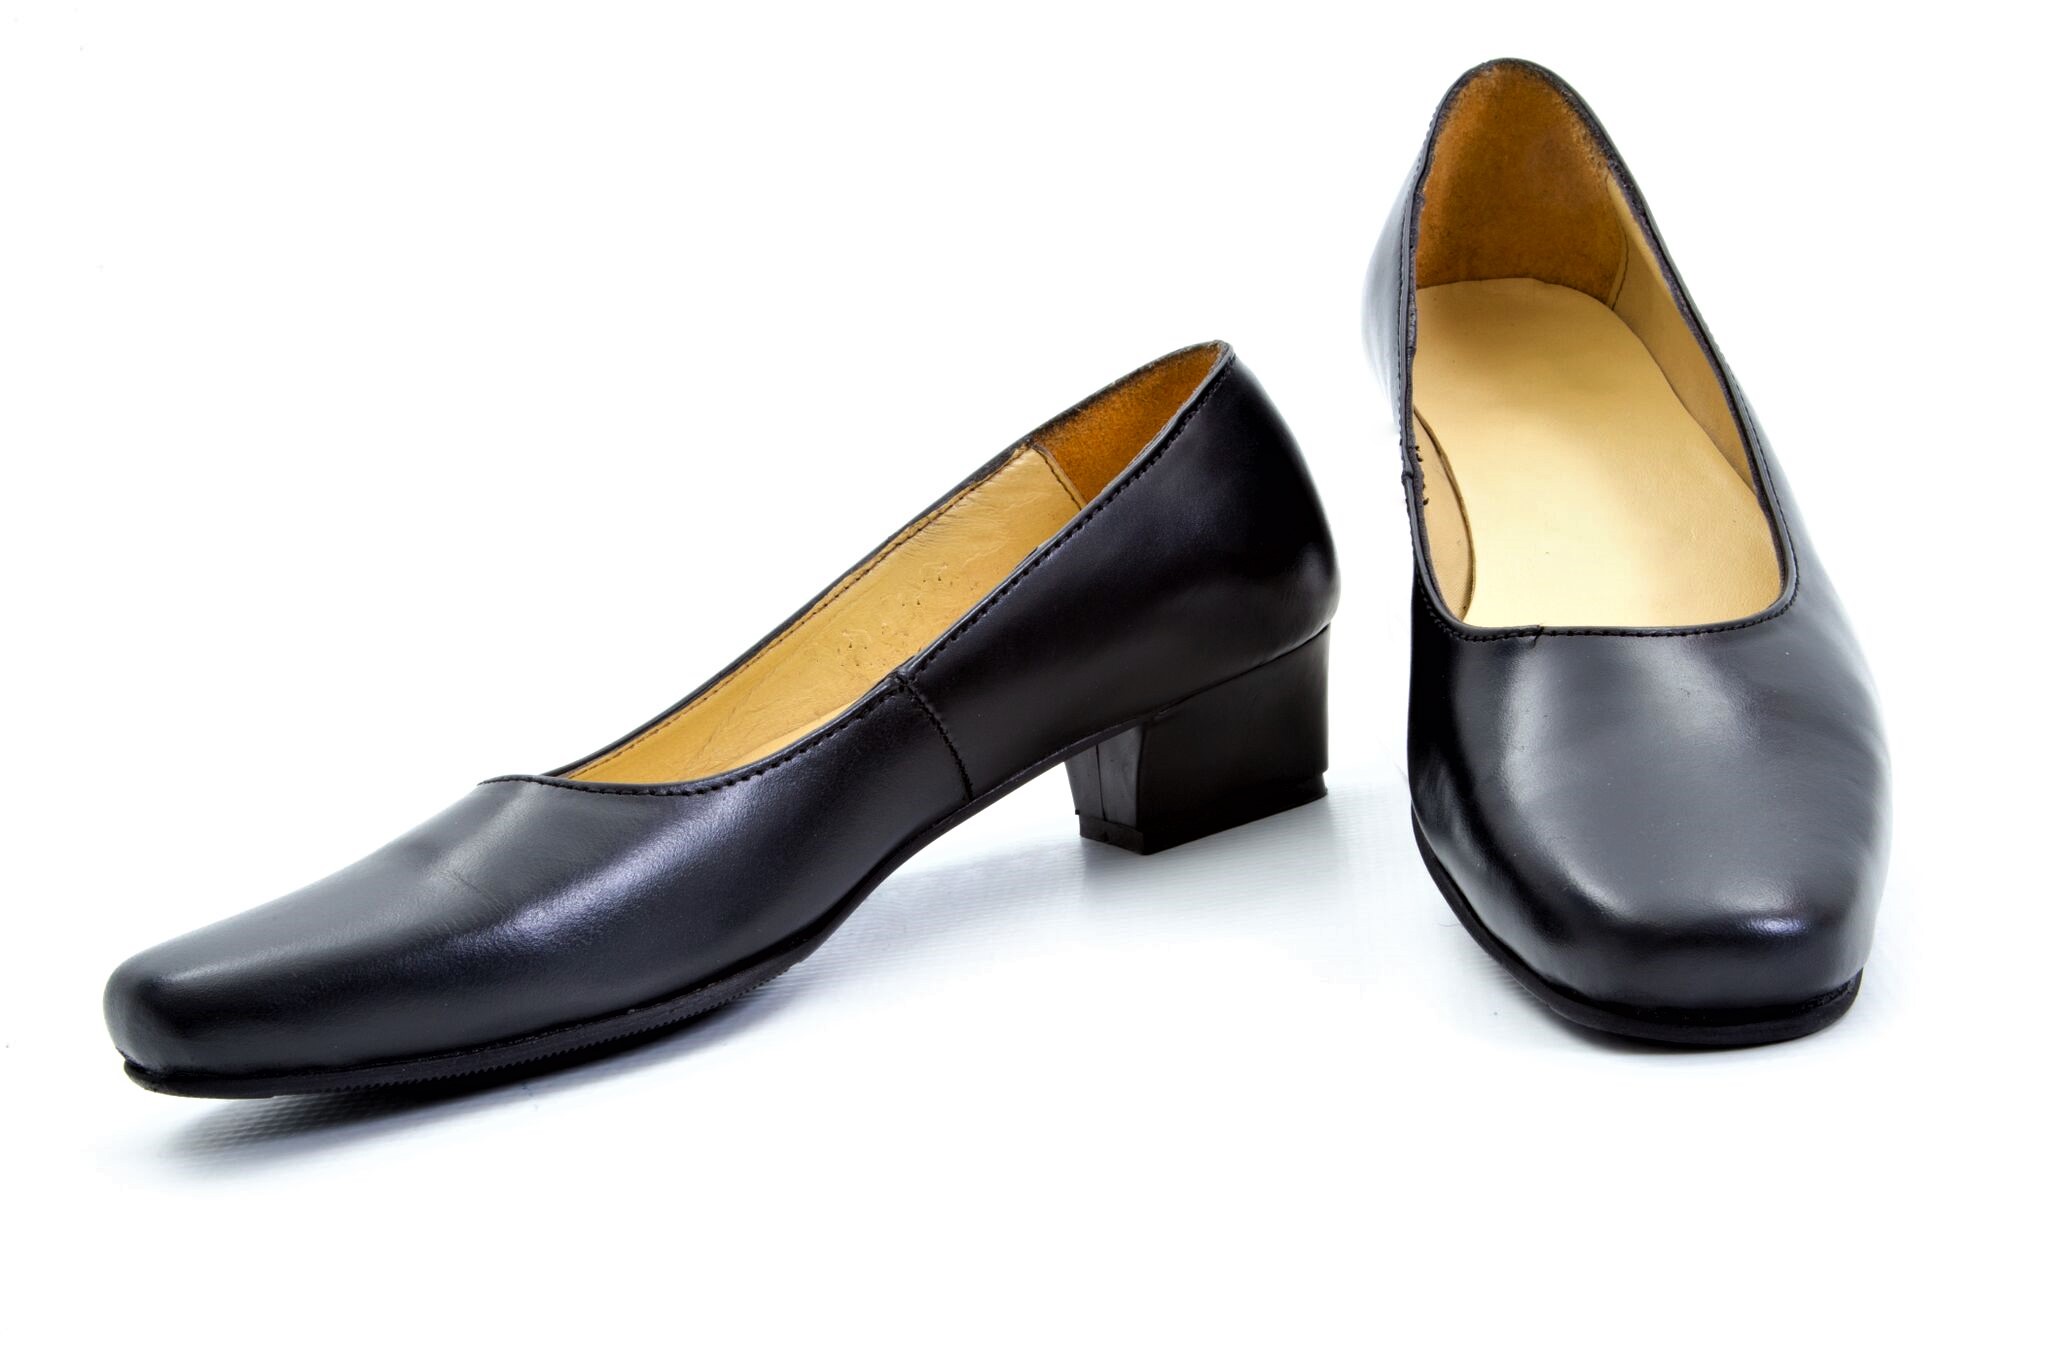 plain black leather shoes